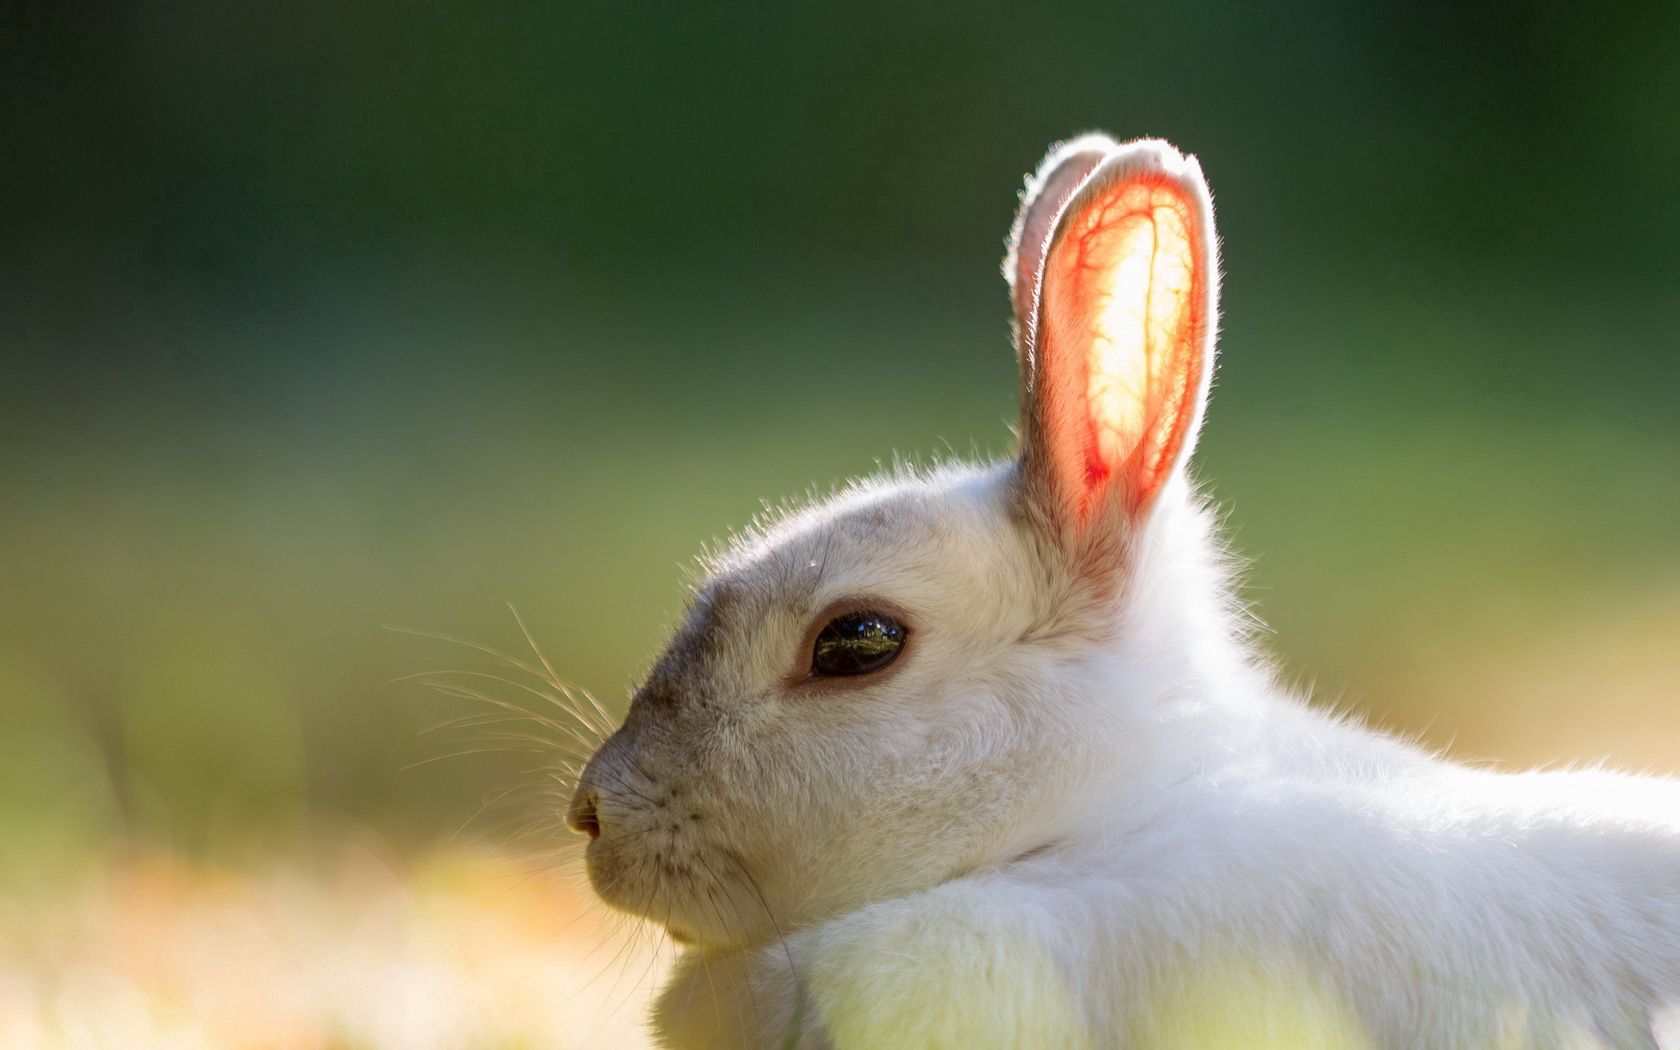 Descarga gratuita de fondo de pantalla para móvil de Conejo, Animales, Verano, Fondo.